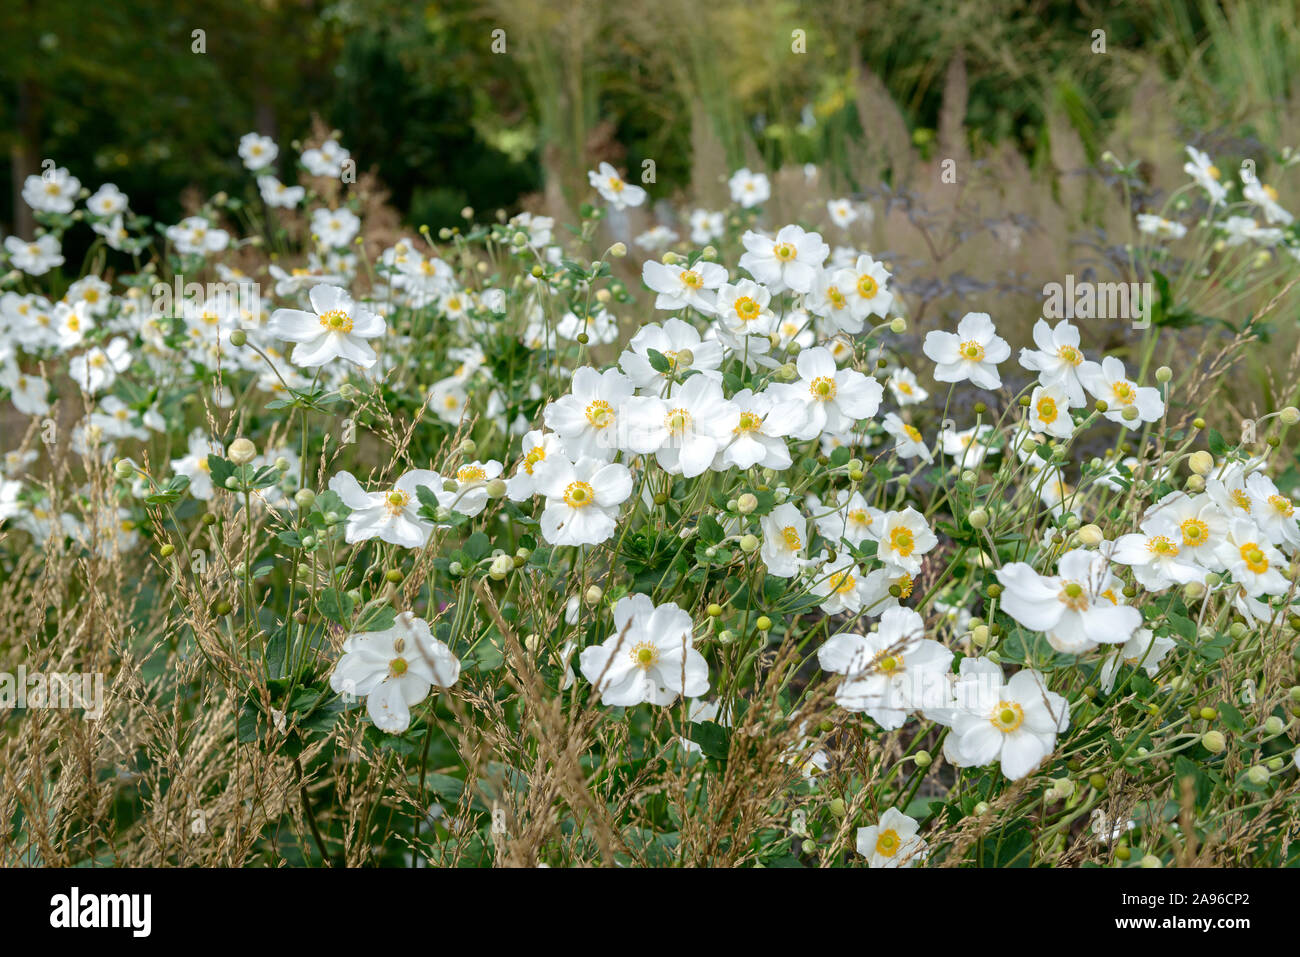 Herbst-Anemone (Anemone × hybrida 'Honorine Jobert') Stock Photo